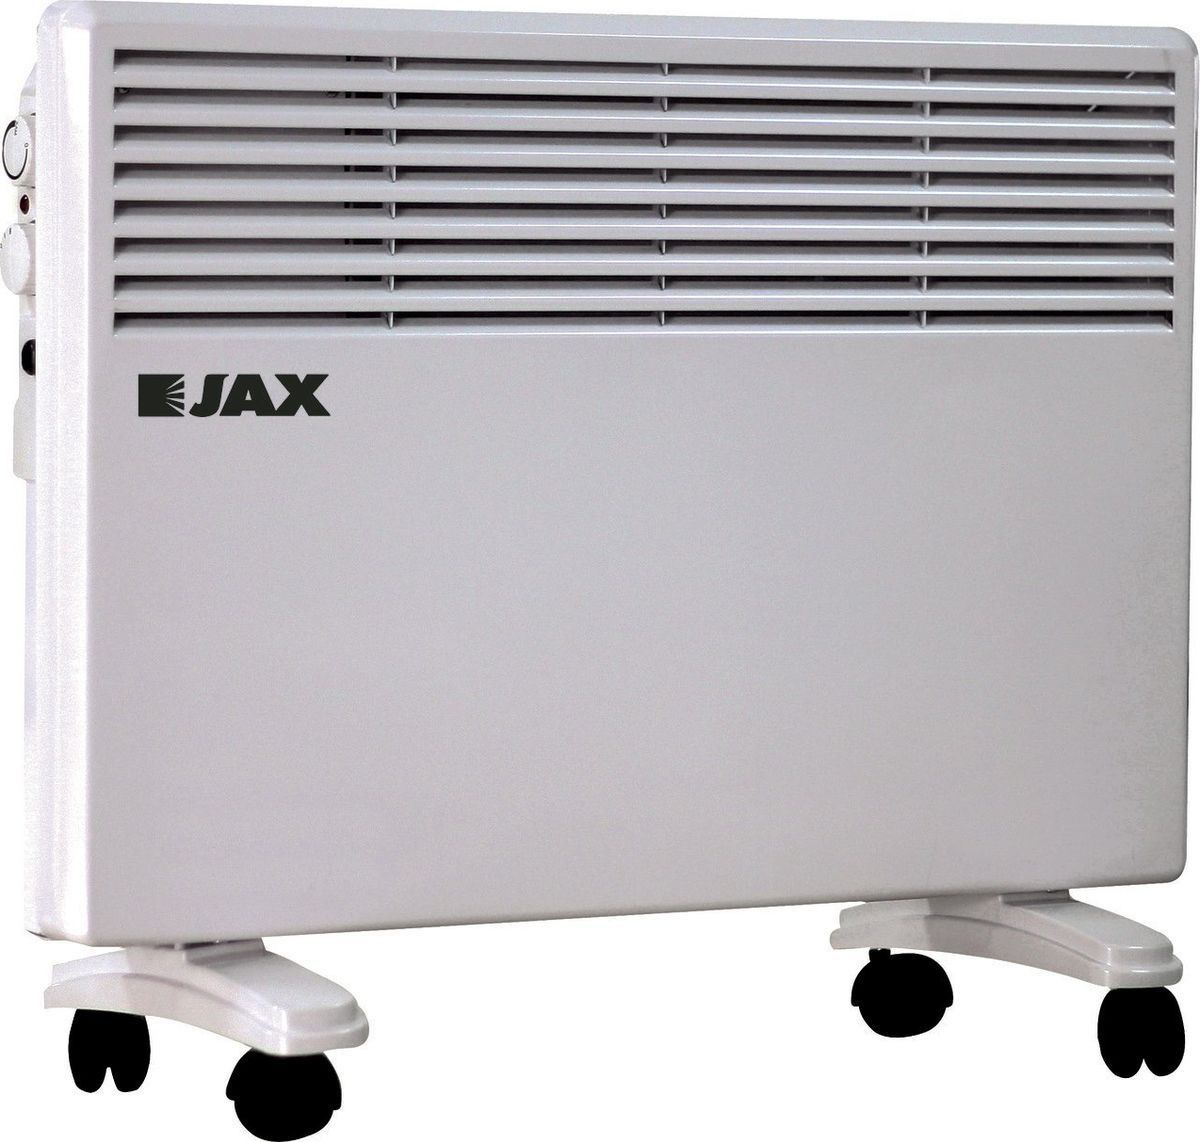  JAX JHSI 2000, 